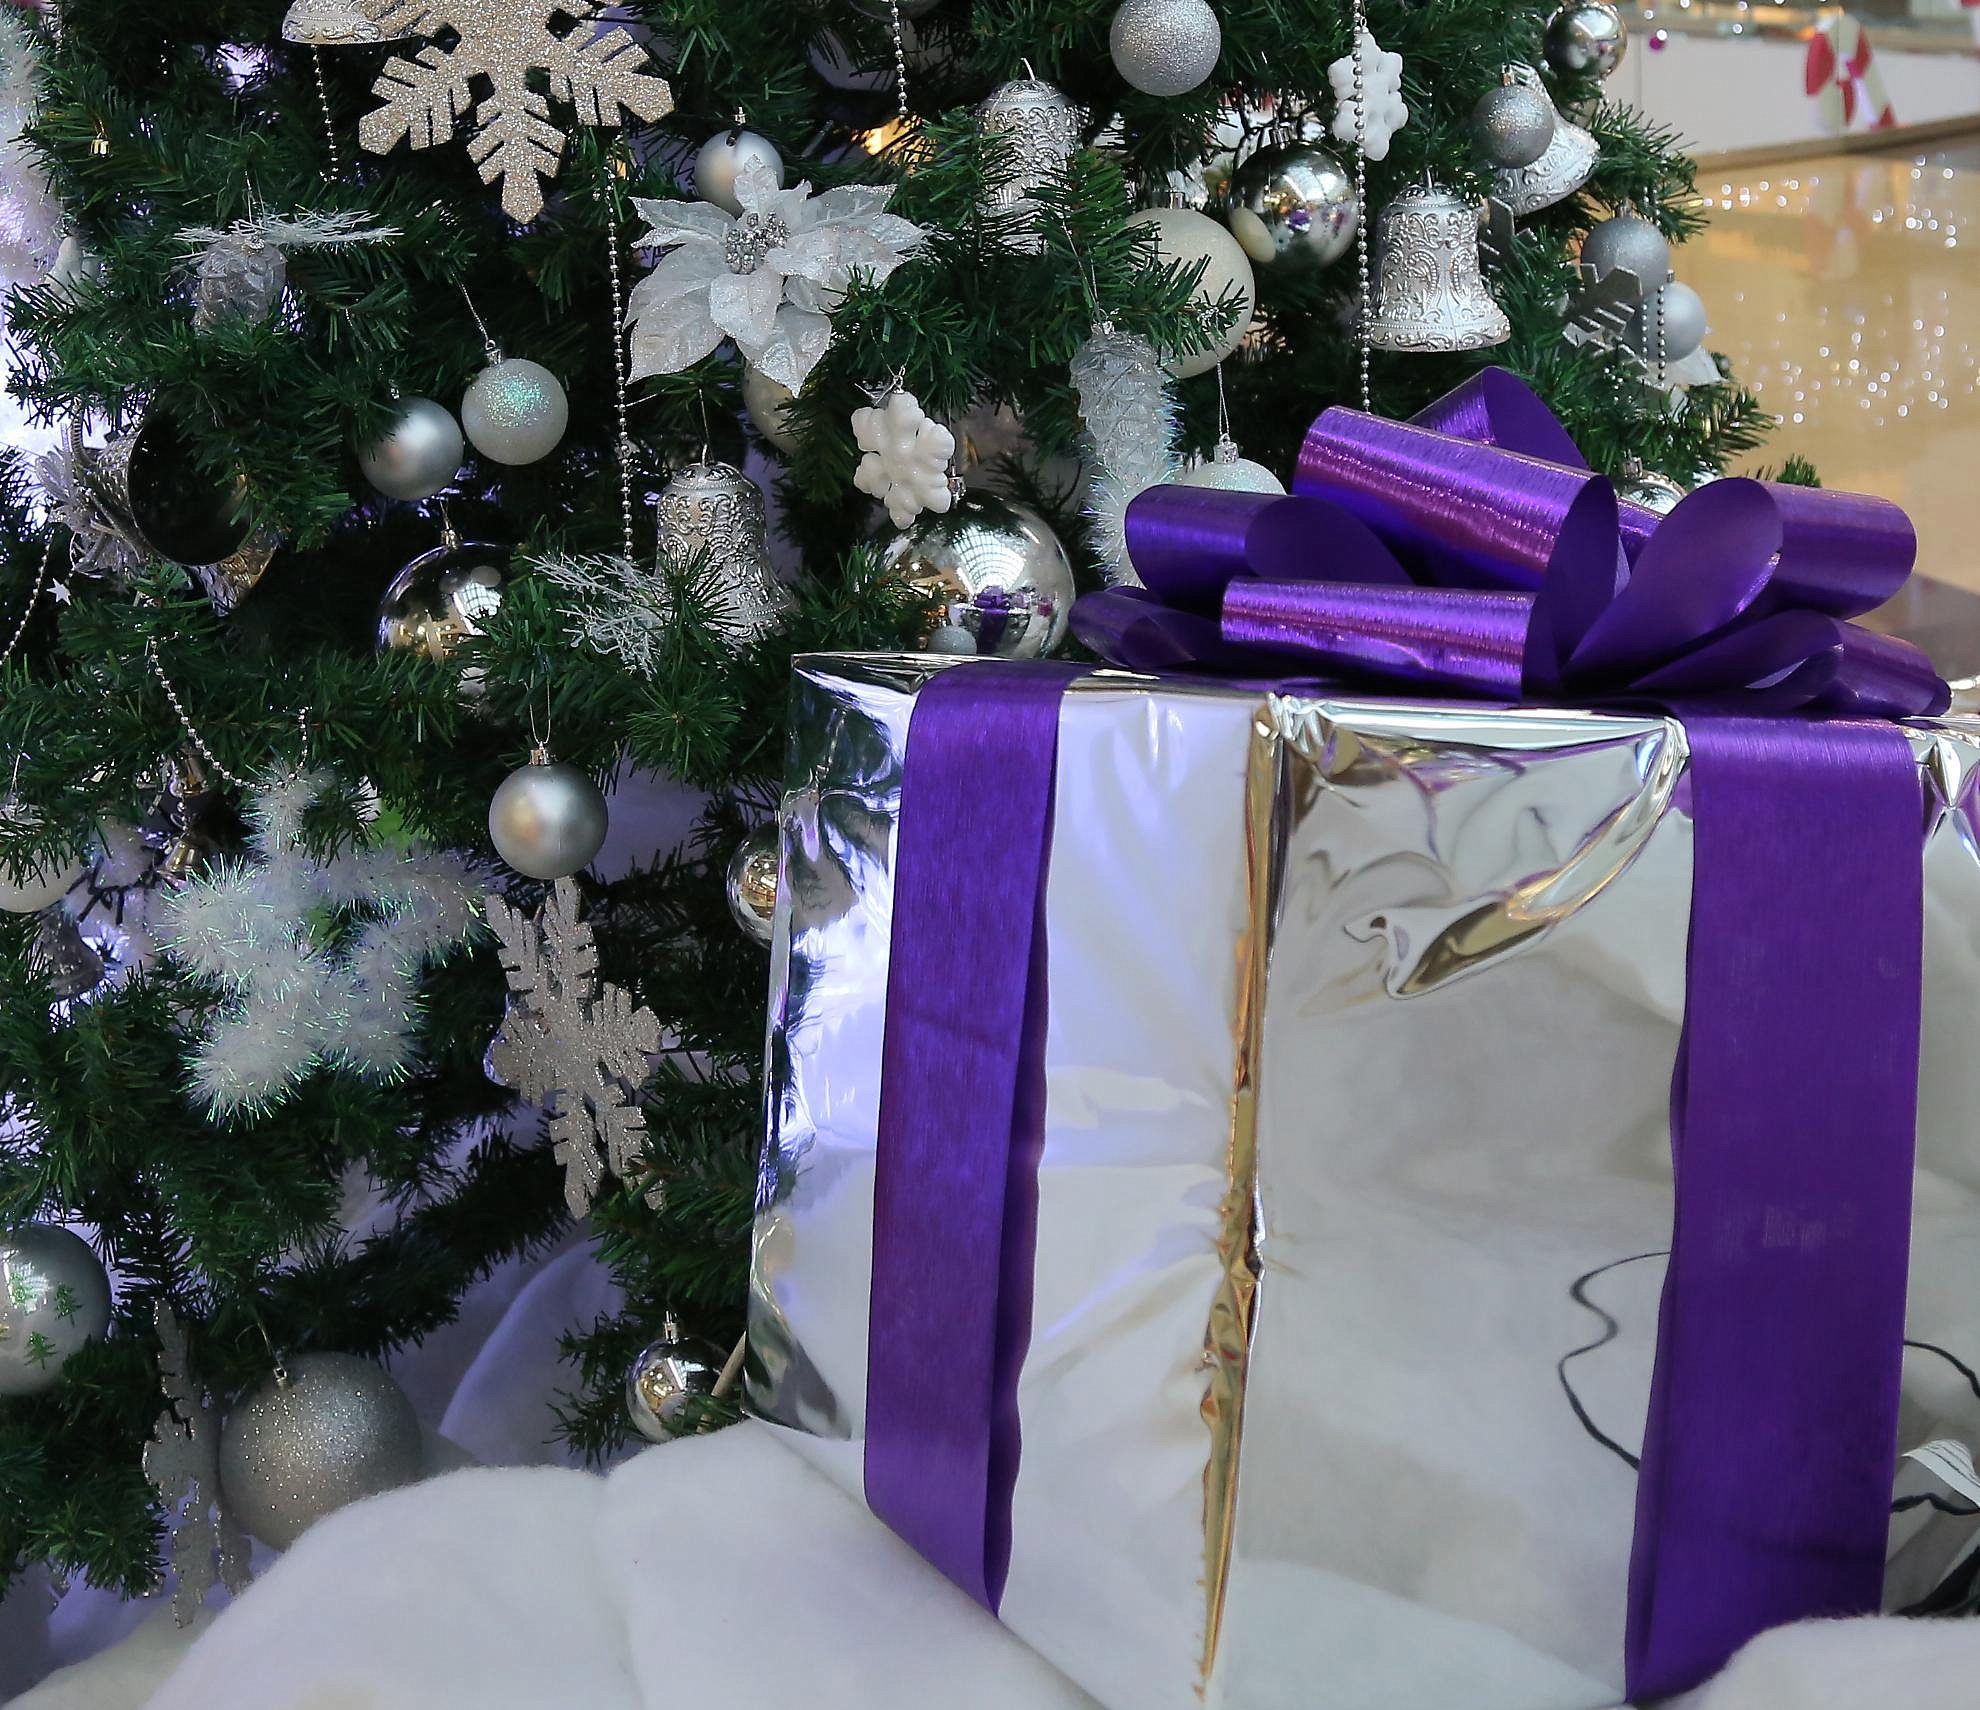 60 детей получили новогодние варежки с подарками от Деда Мороза